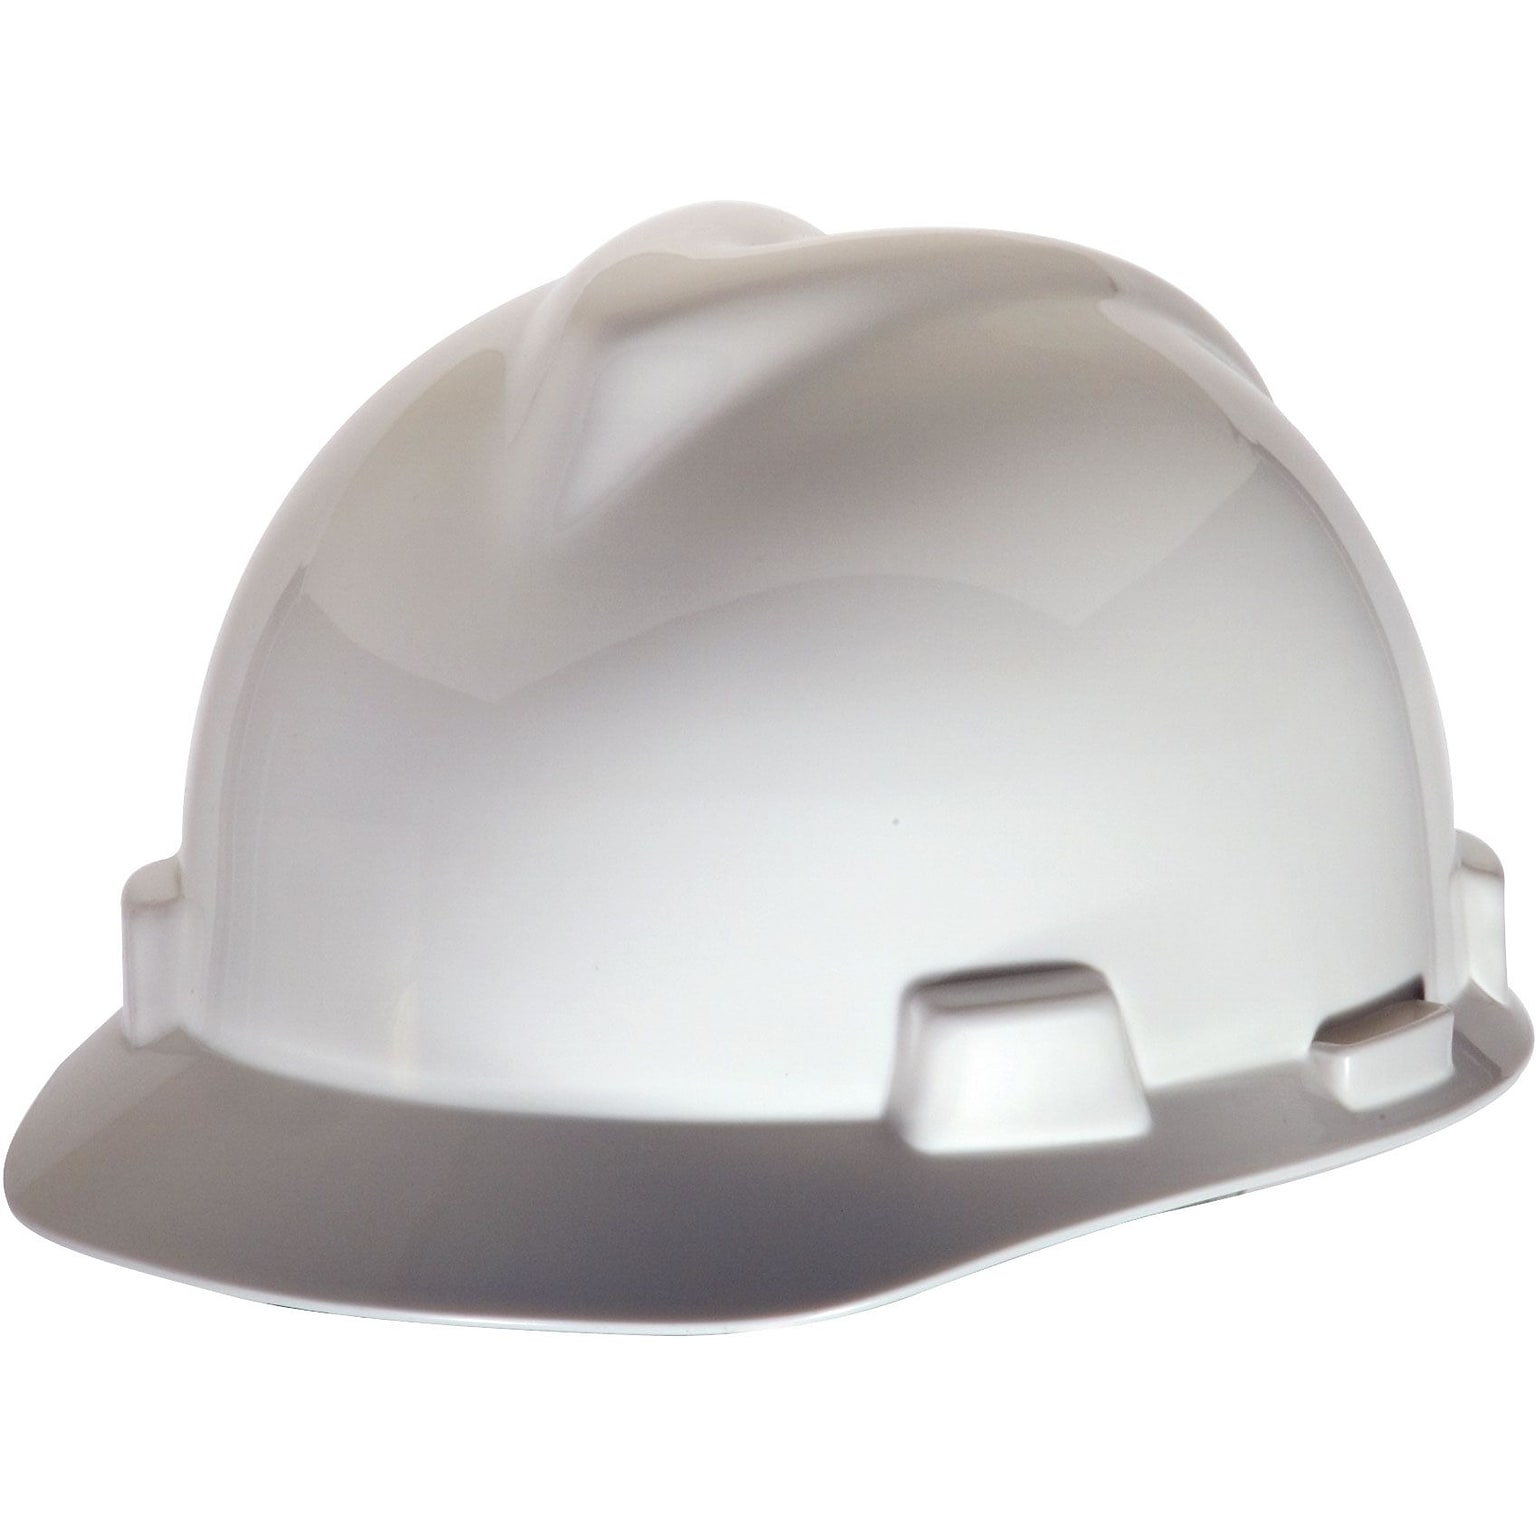 Mine Safety Appliances V-Gard Polyethylene 4-Point Pinlock Suspension Short Brim Hard Hat, White (463942)